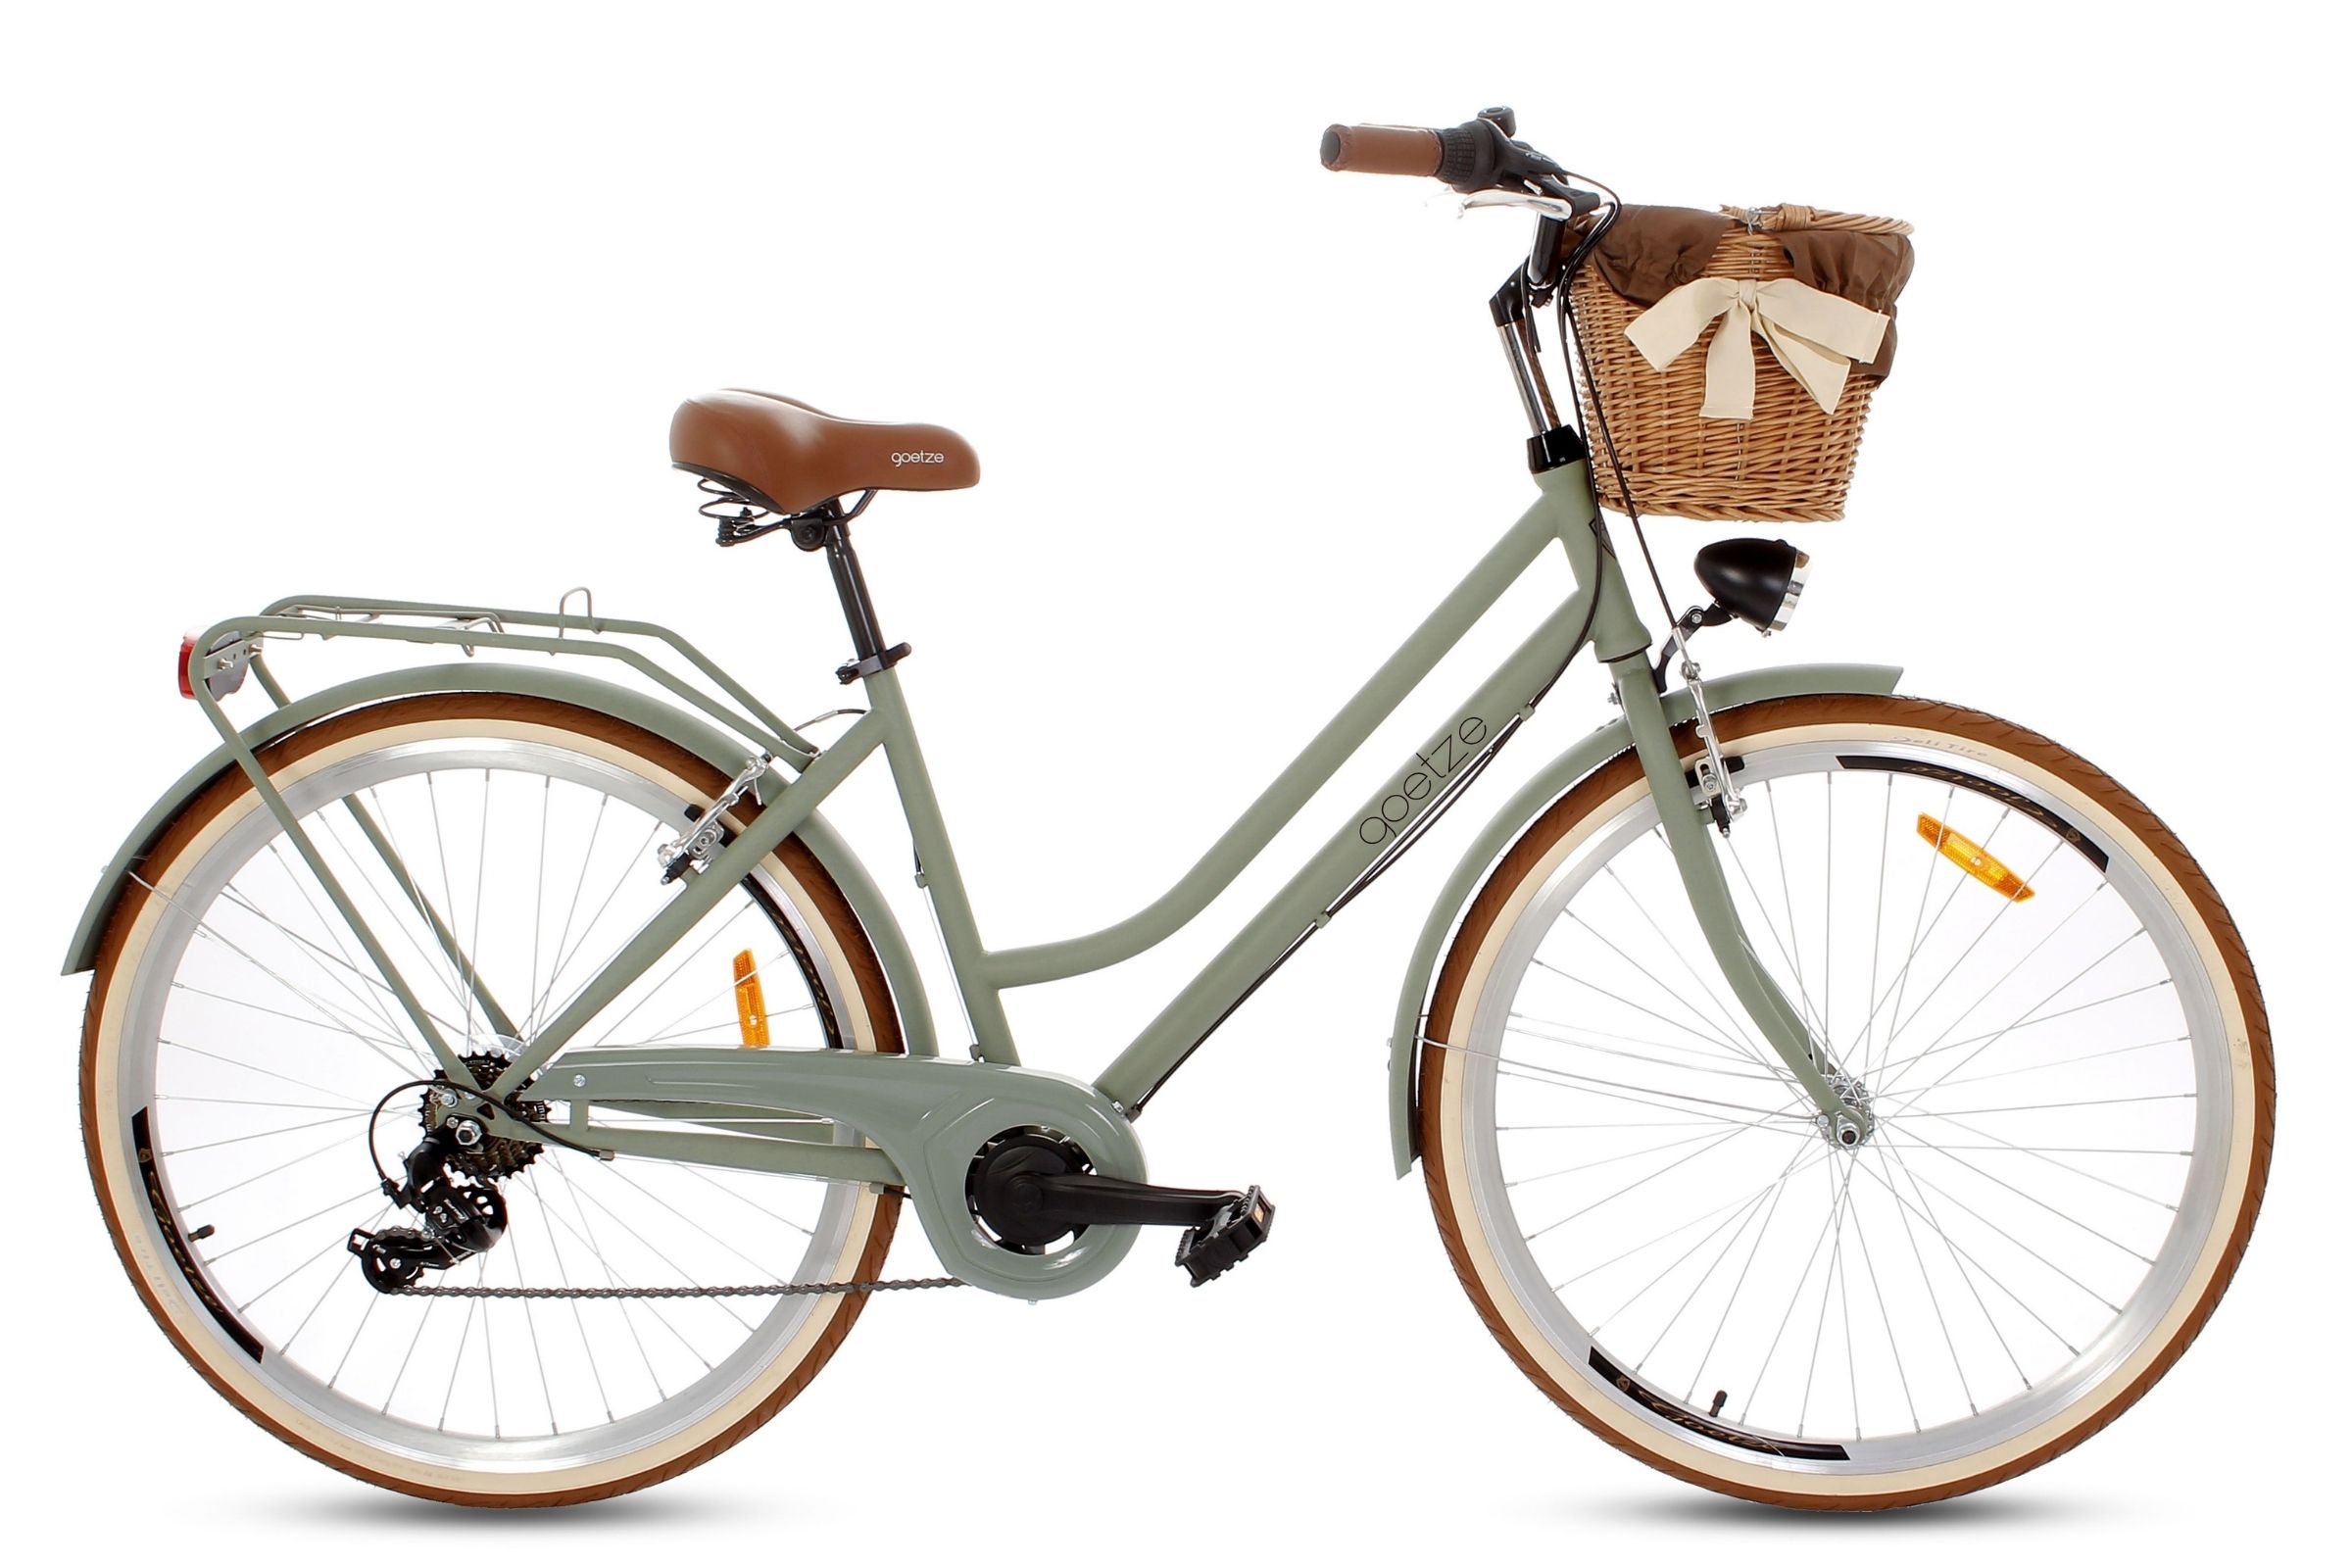 Bелосипед Goetze® Touring, 160-185 cm височина, 7-скоростен, колела 28″, маслина